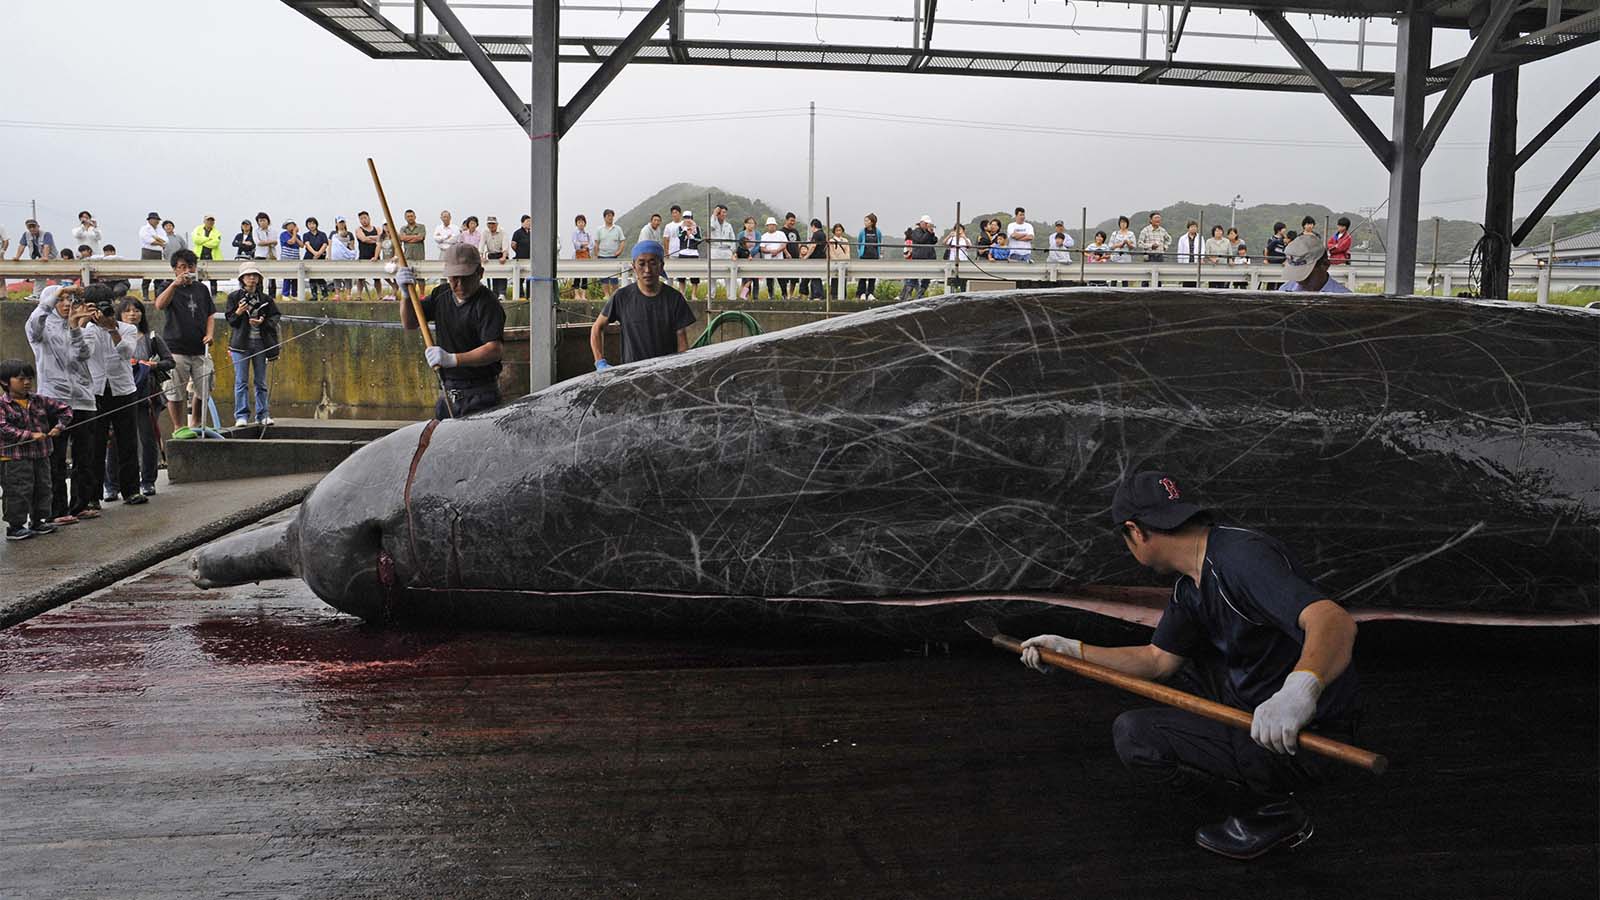 גופת לוויתן שניצוד במימי יפן מבותרת לצרכים מסחריים. ארכיון (AP Photo/Shuji Kajiyama)